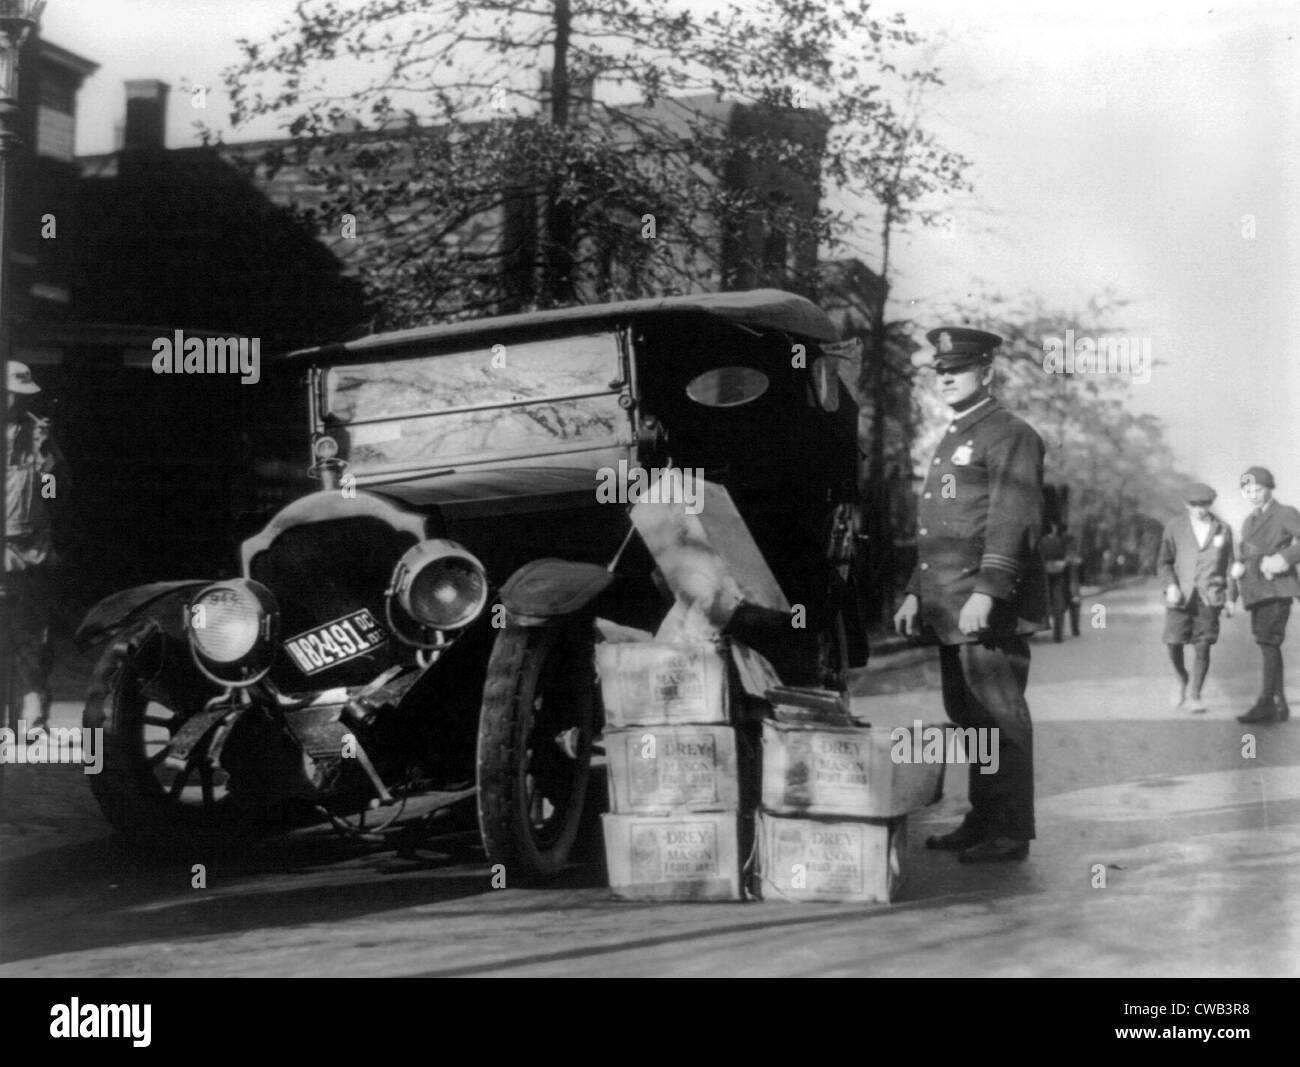 Verbot, ein Polizist steht neben einem Autowrack und Fälle von Moonshine, 16. November 1922. Stockfoto